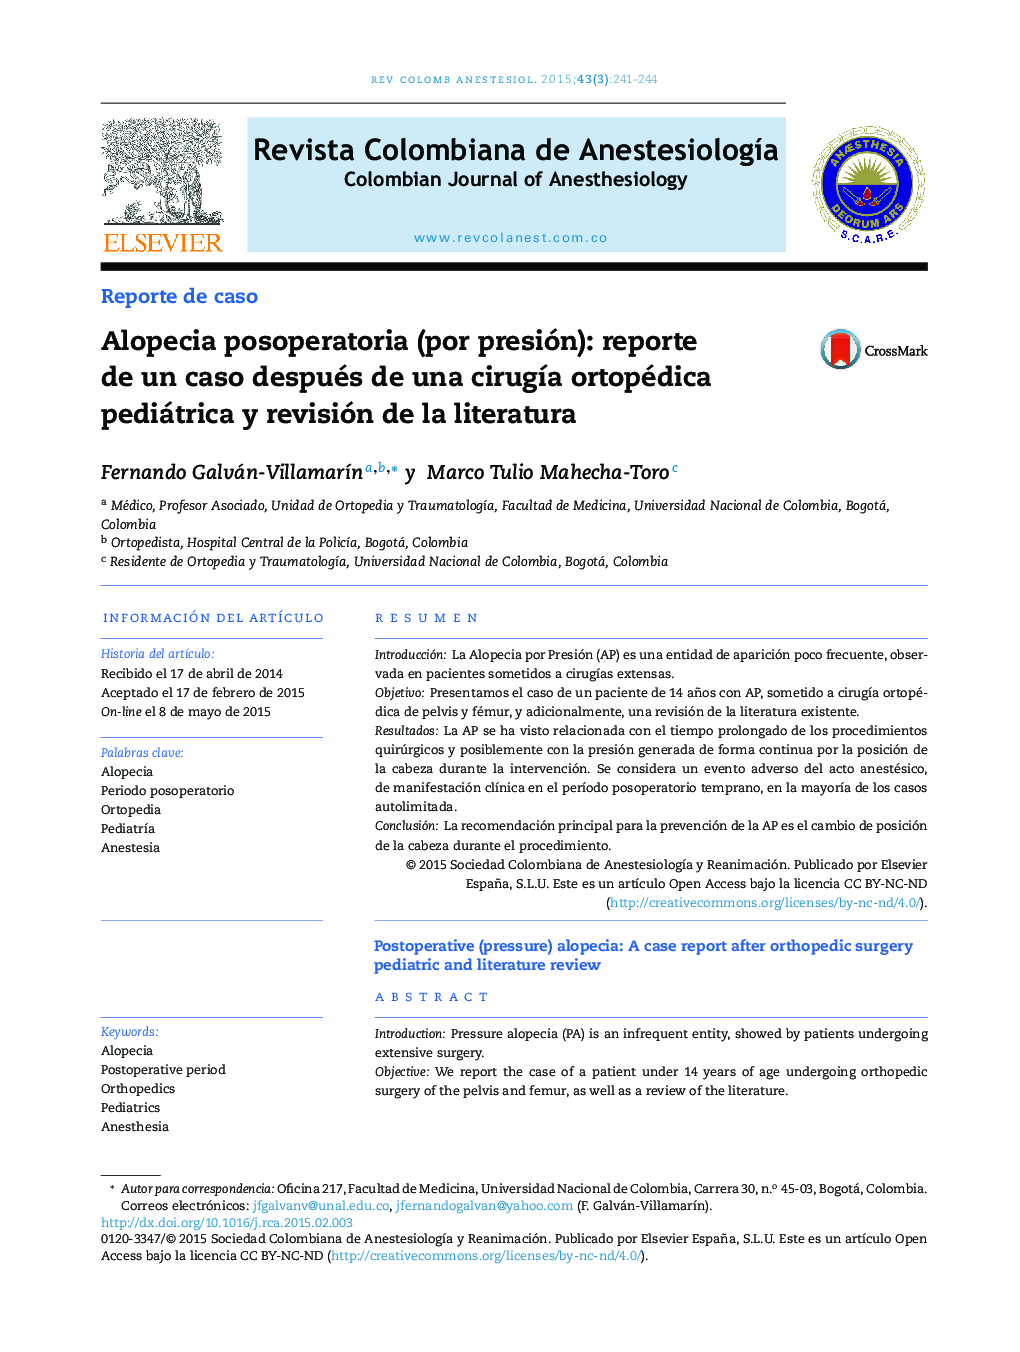 Alopecia posoperatoria (por presión): reporte de un caso después de una cirugía ortopédica pediátrica y revisión de la literatura